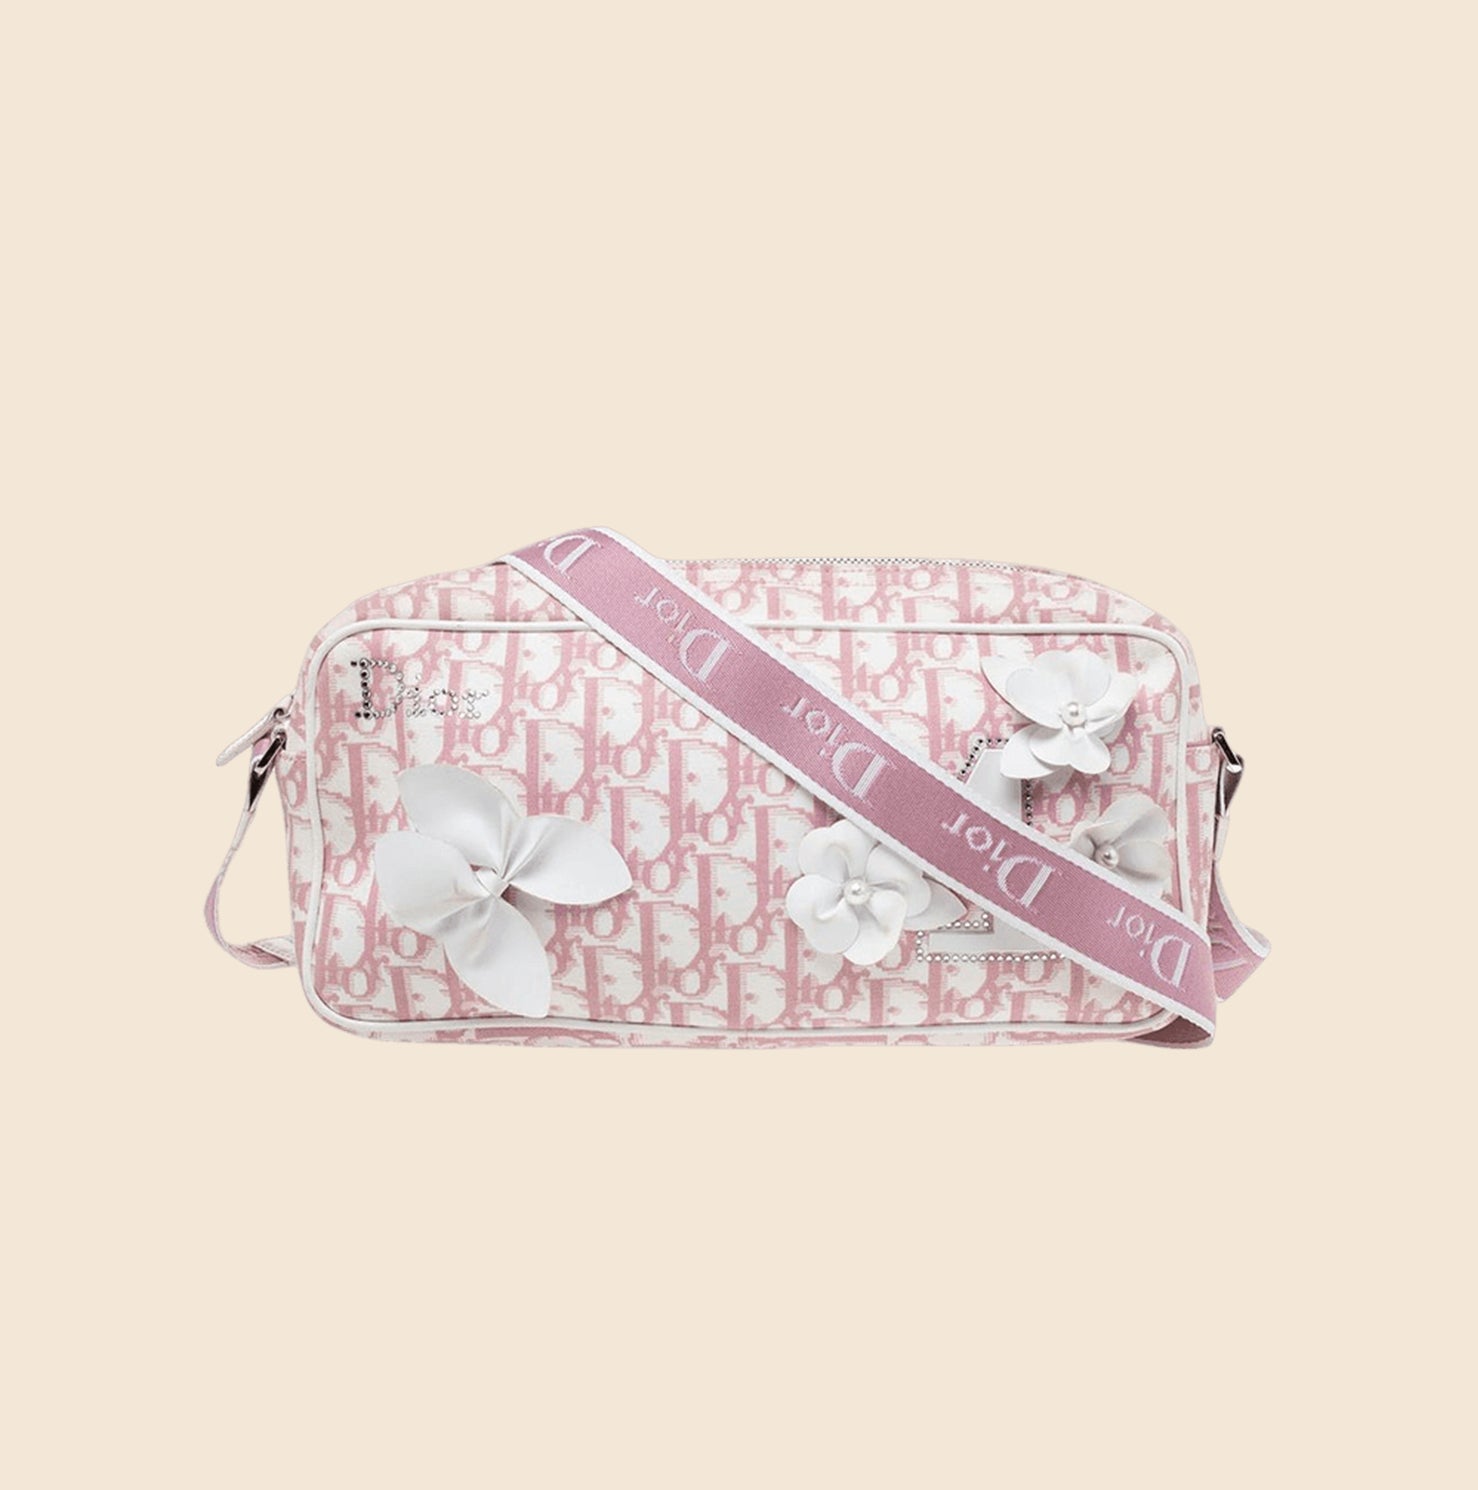 Vintage Christian Dior pink oblique monogram trotter handbag for